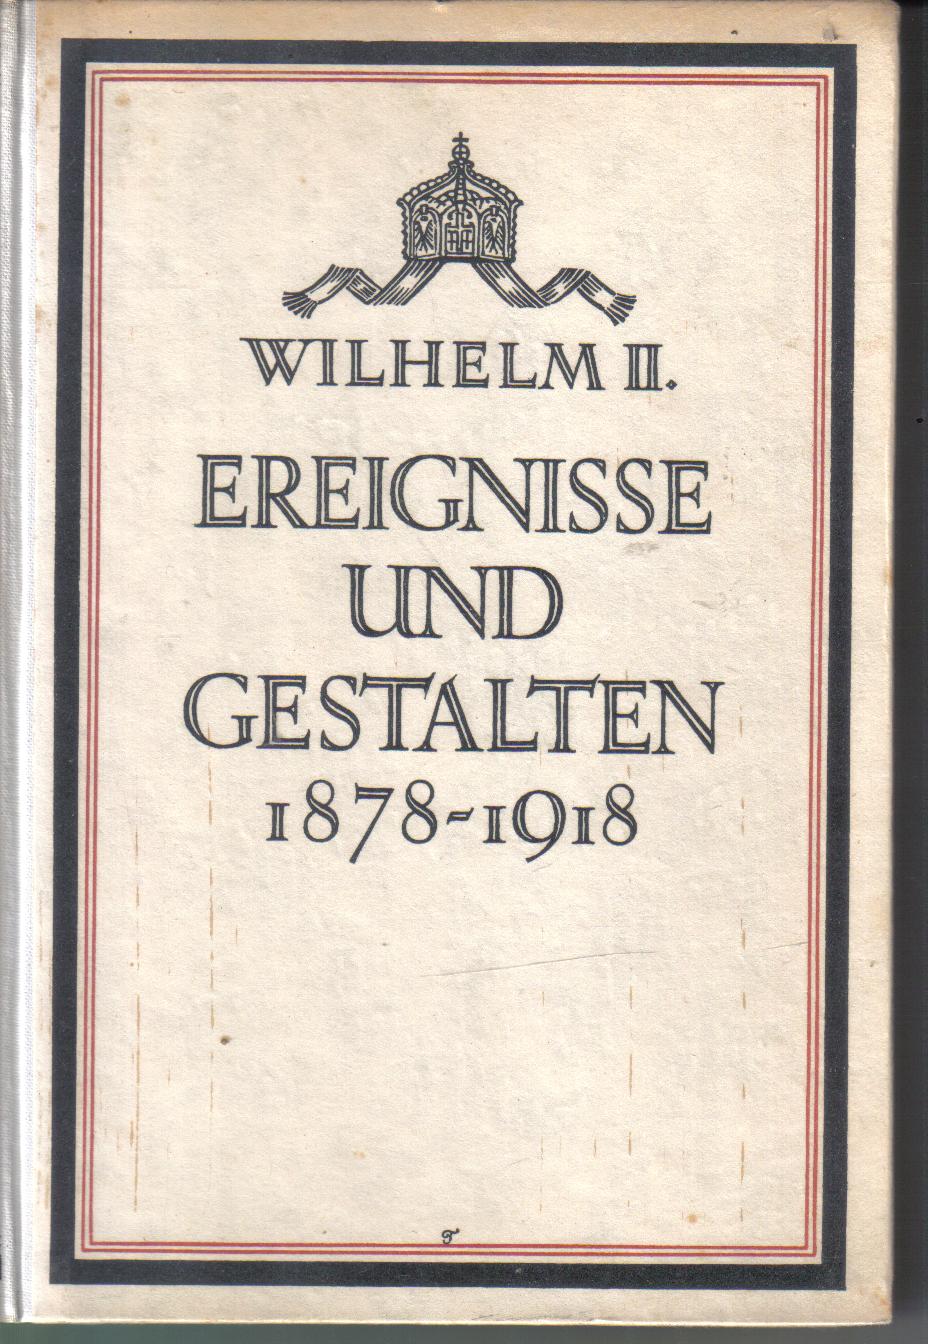 Wilhelm II  Ereignisse und Gestalten 1878-1918